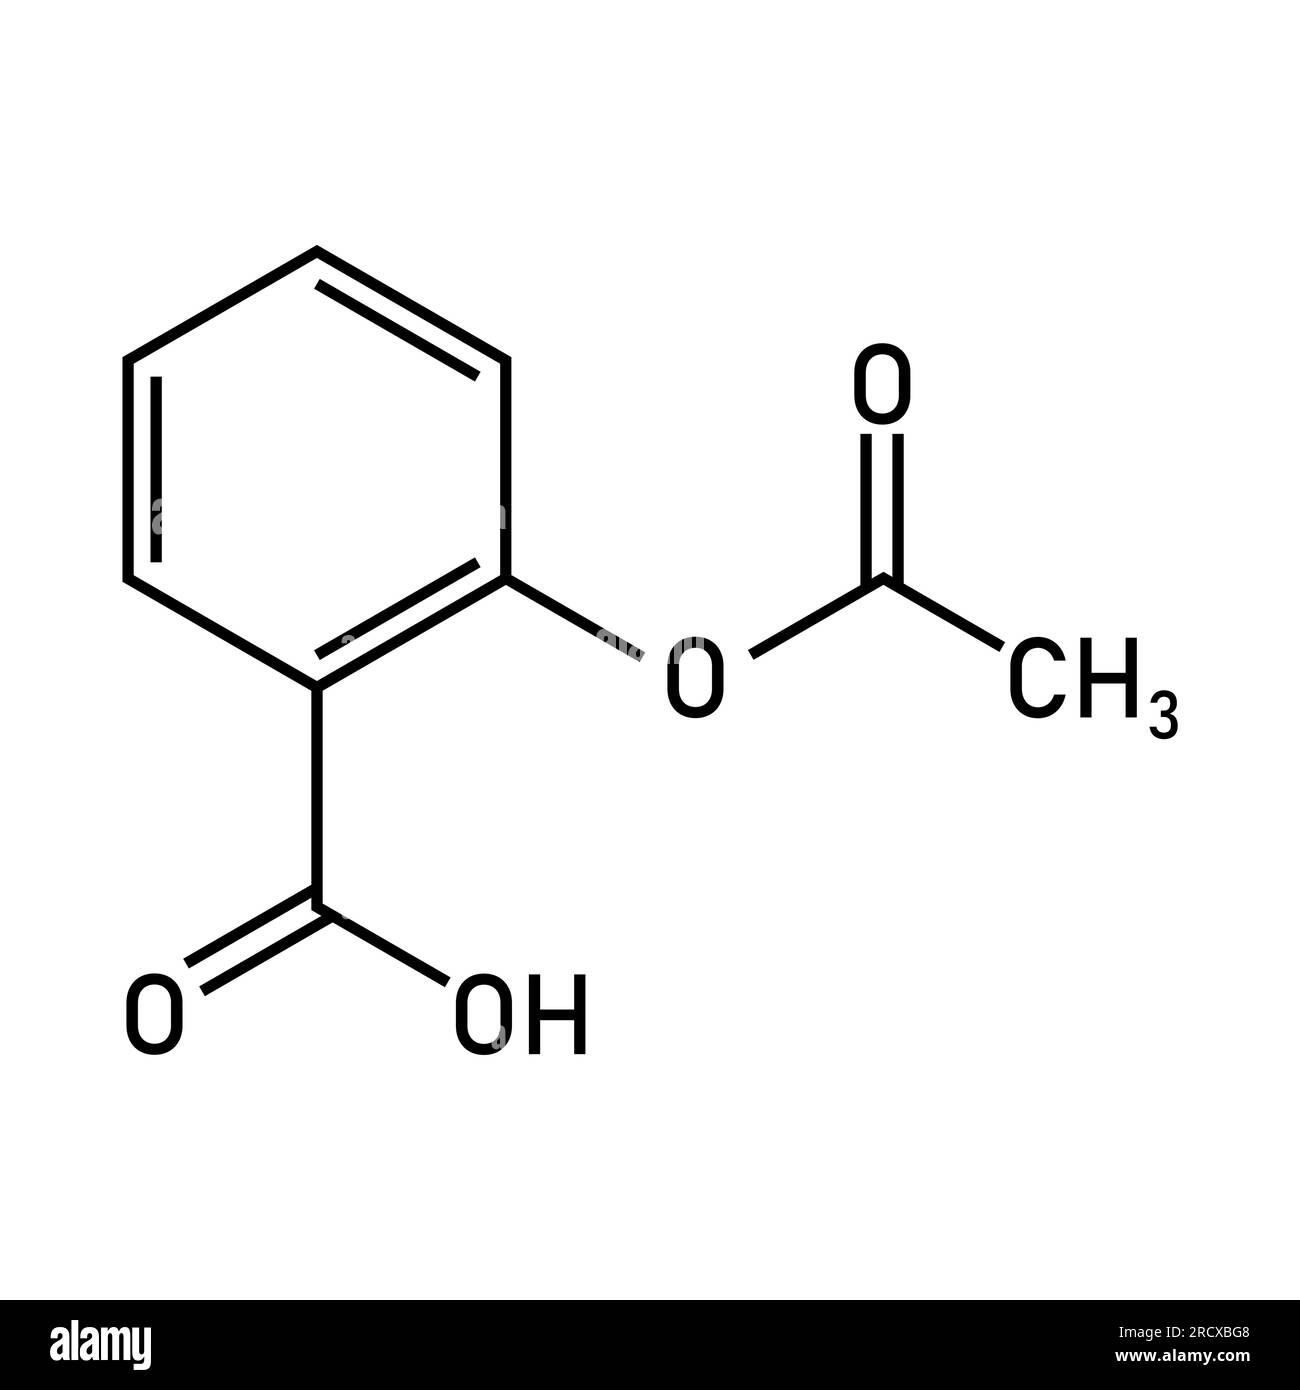 Struttura chimica dell'aspirina o dell'acido acetilsalicilico (C9H8O4). Risorse chimiche per insegnanti e studenti. Illustrazione Vettoriale